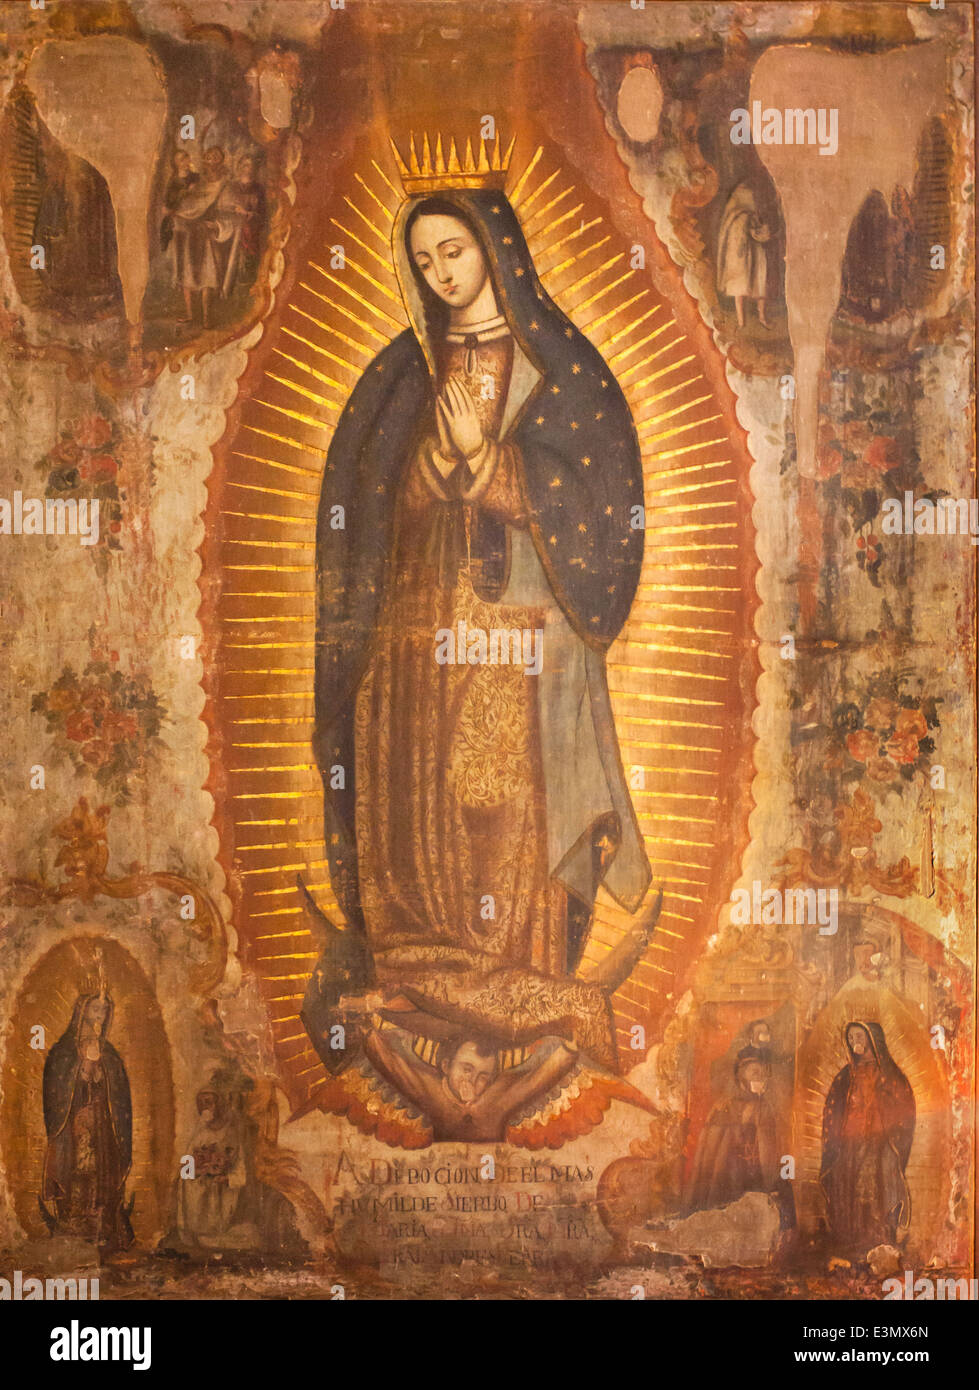 Xviii secolo il dipinto a olio della Vergine di Guadalupe nella ex convento di San Agustin, Yuriria, Guanajuato. Artista sconosciuto. Foto Stock